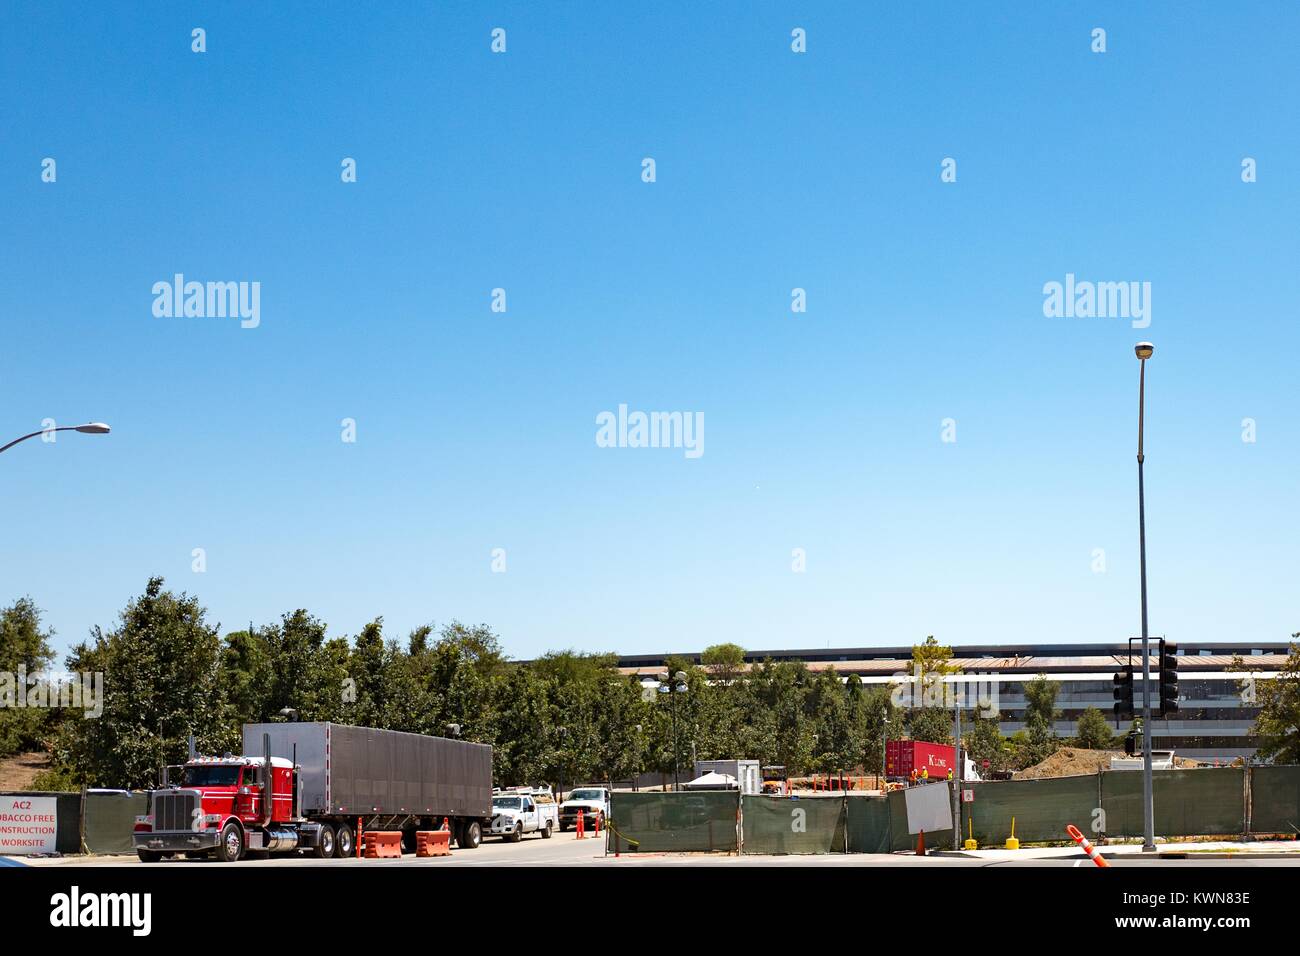 Un tracteur semi-remorque quitte un site de construction à la porte 2 l'Apple Park, connu familièrement comme "le vaisseau spatial", le nouveau quartier général d'Apple Inc dans la Silicon Valley ville de Cupertino, Californie, 25 juillet 2017. Banque D'Images